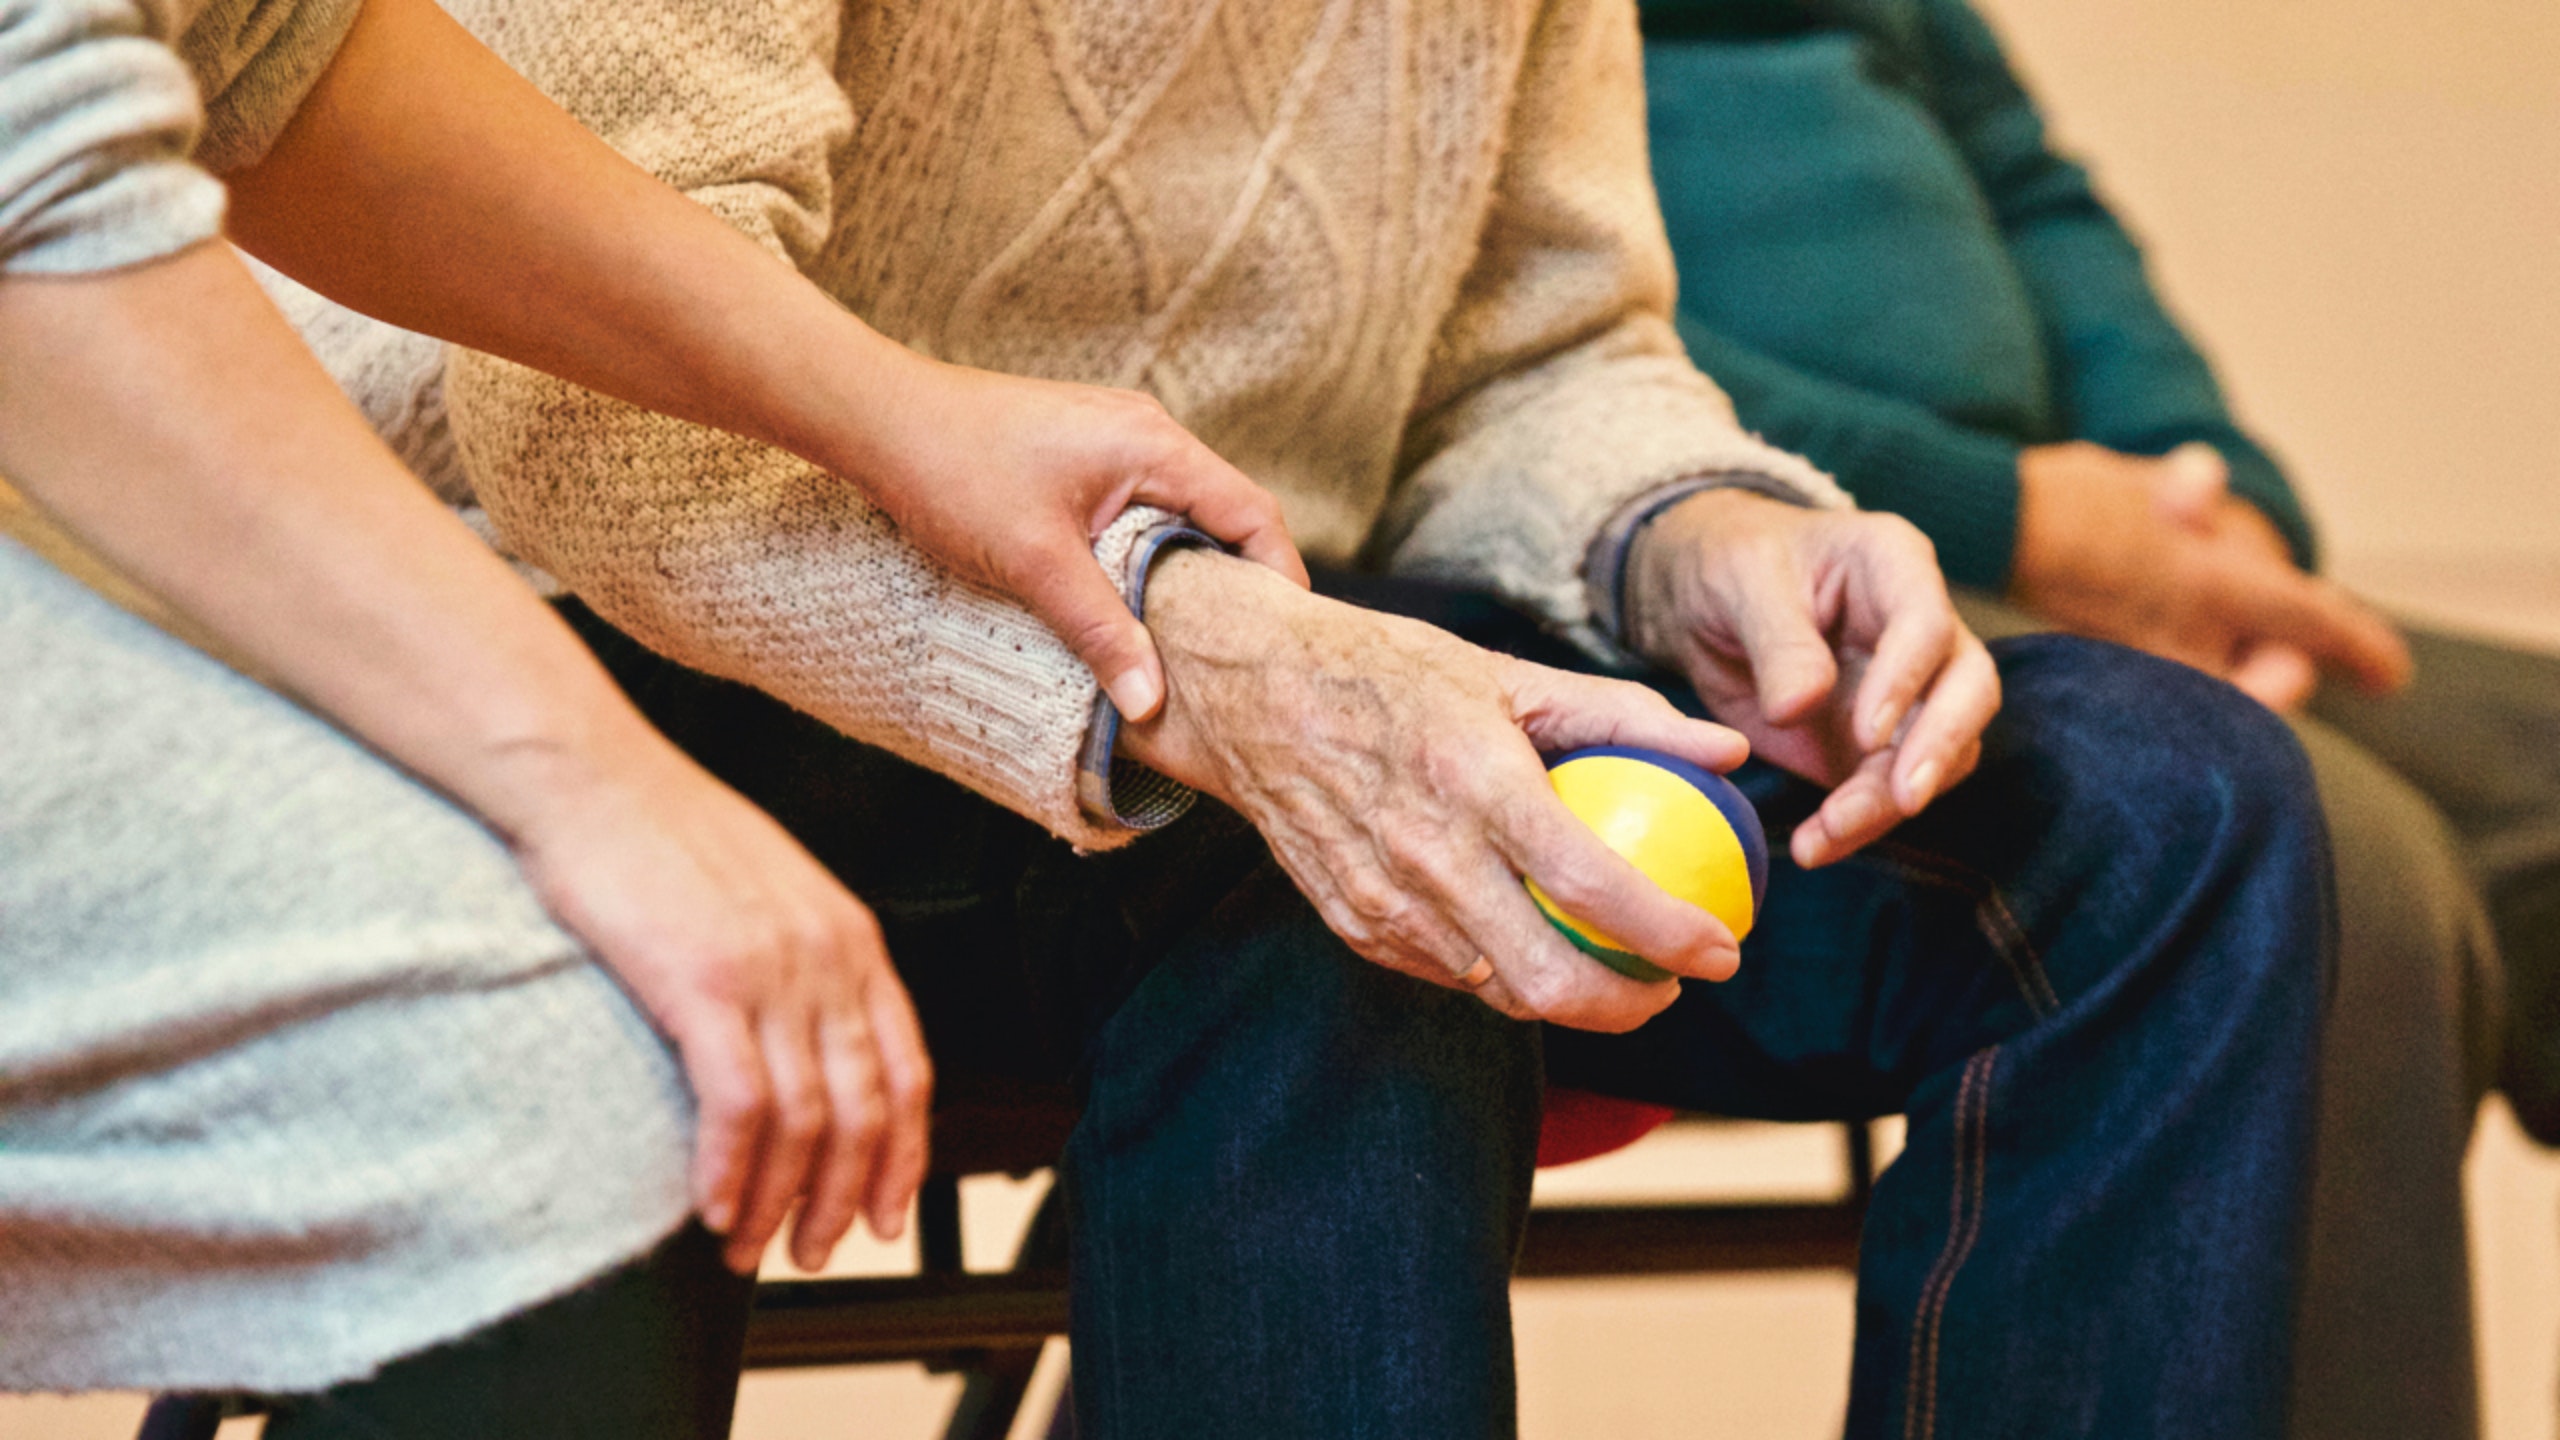 Servicii de încredere în îngrijirea persoanelor vârstnice și cu nevoi